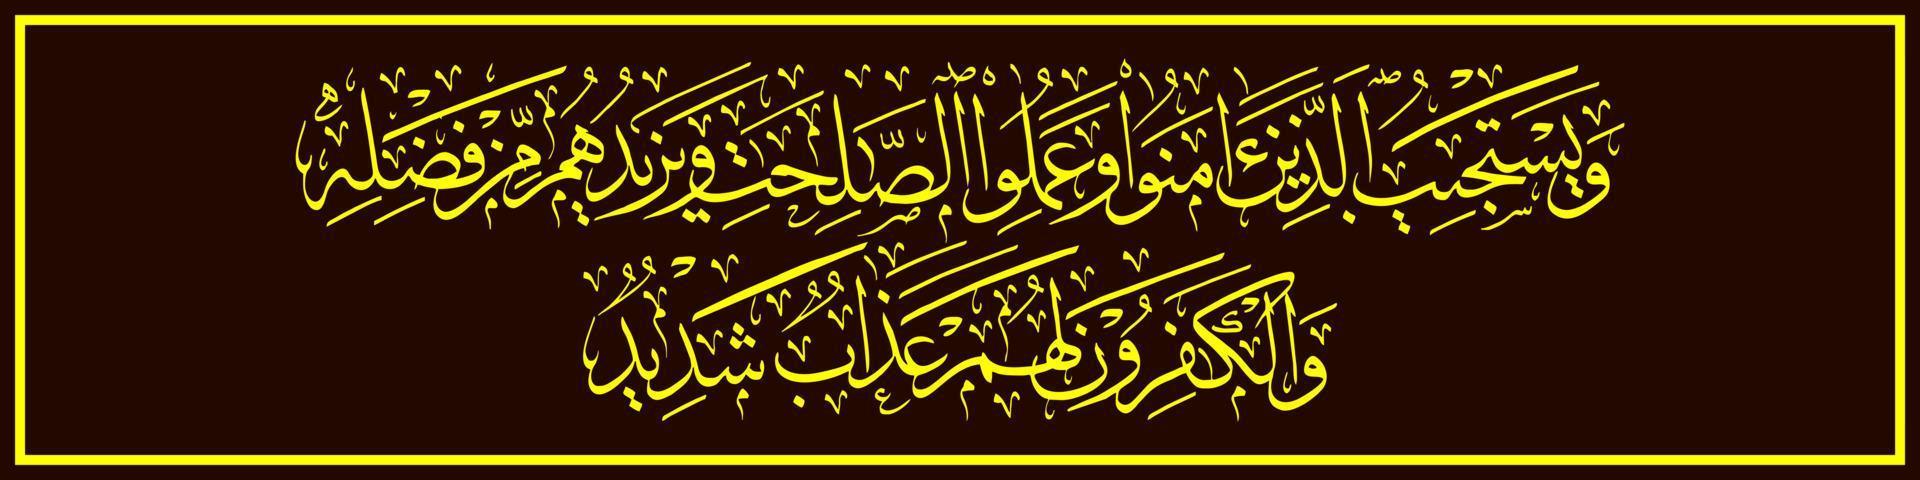 arabische Kalligrafie, al qur'an surah ash-shura 26, Übersetzung und er erlaubt die Gebete derer, die glauben und Gutes tun und ihre Belohnung durch seine Gnade erhöhen. vektor